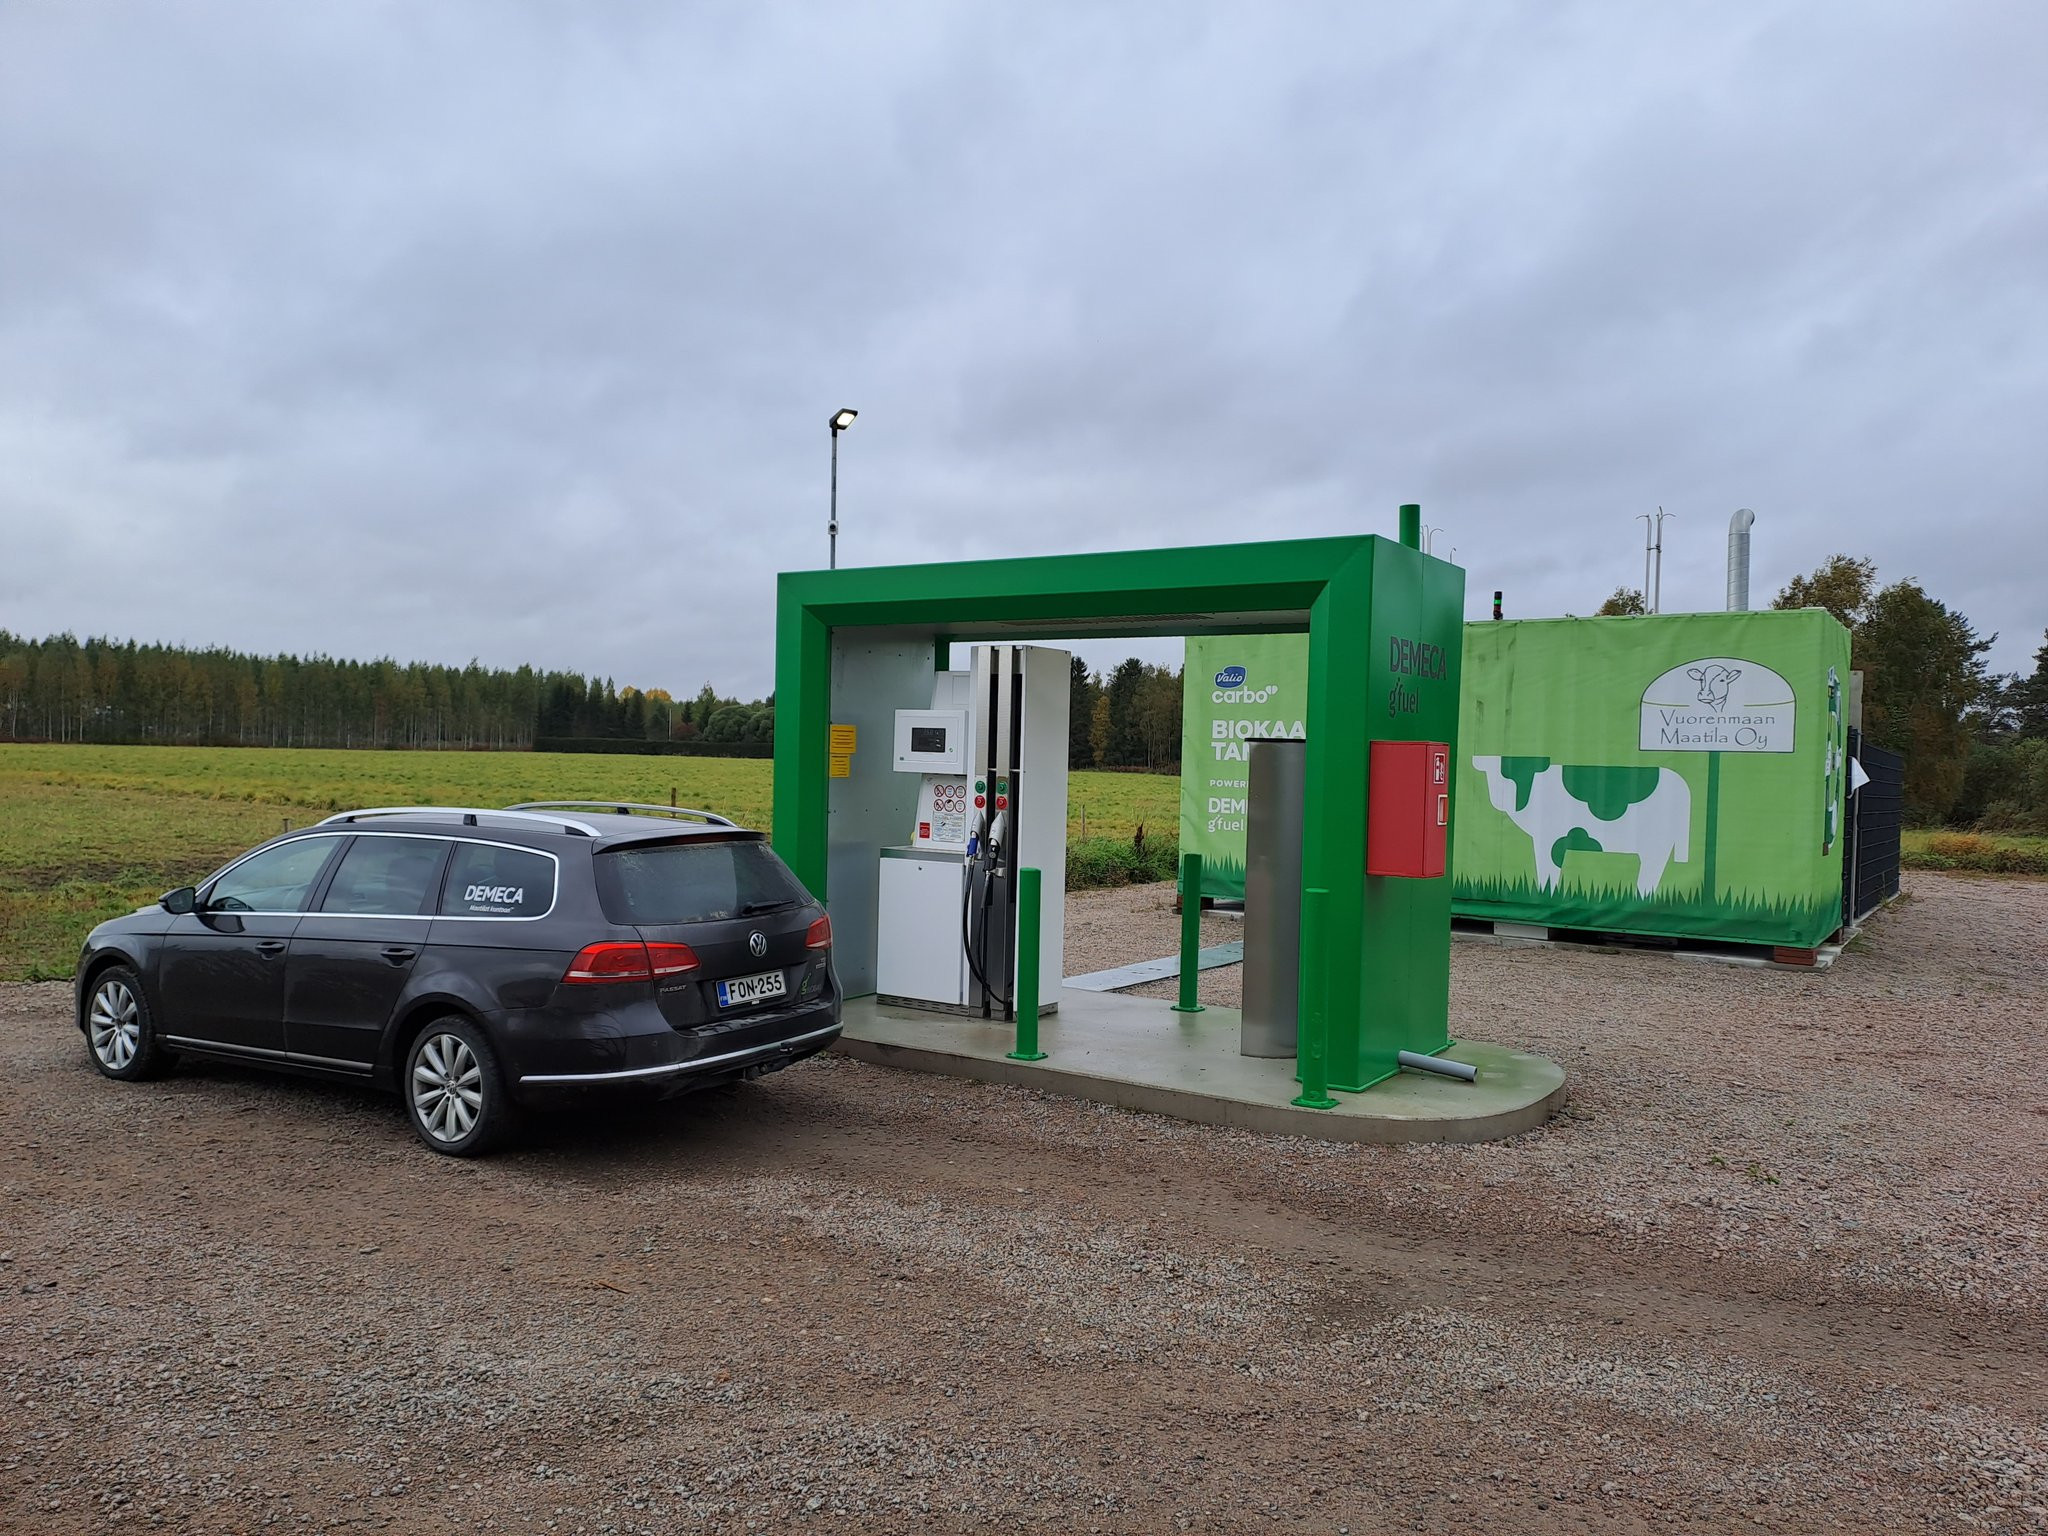 Estación de servizo de biometano (CBG - biogás comprimido) obtido a partir de esterco de vaca, outros descartes de granxa e subproductos dunha empresa de snacks próxima (aceites, maionesa, patacas fritidas, etc) localizada na granxa Vuorenmaa (socia da Cooperativa VALIO) en Haapavesi (Finlandia).O biometano producido fornece a coches de particulares adaptados a CBG e ás cisternas de recollida de leite de Valio nesa rexión como se pode observar en ambas as fotografías. 